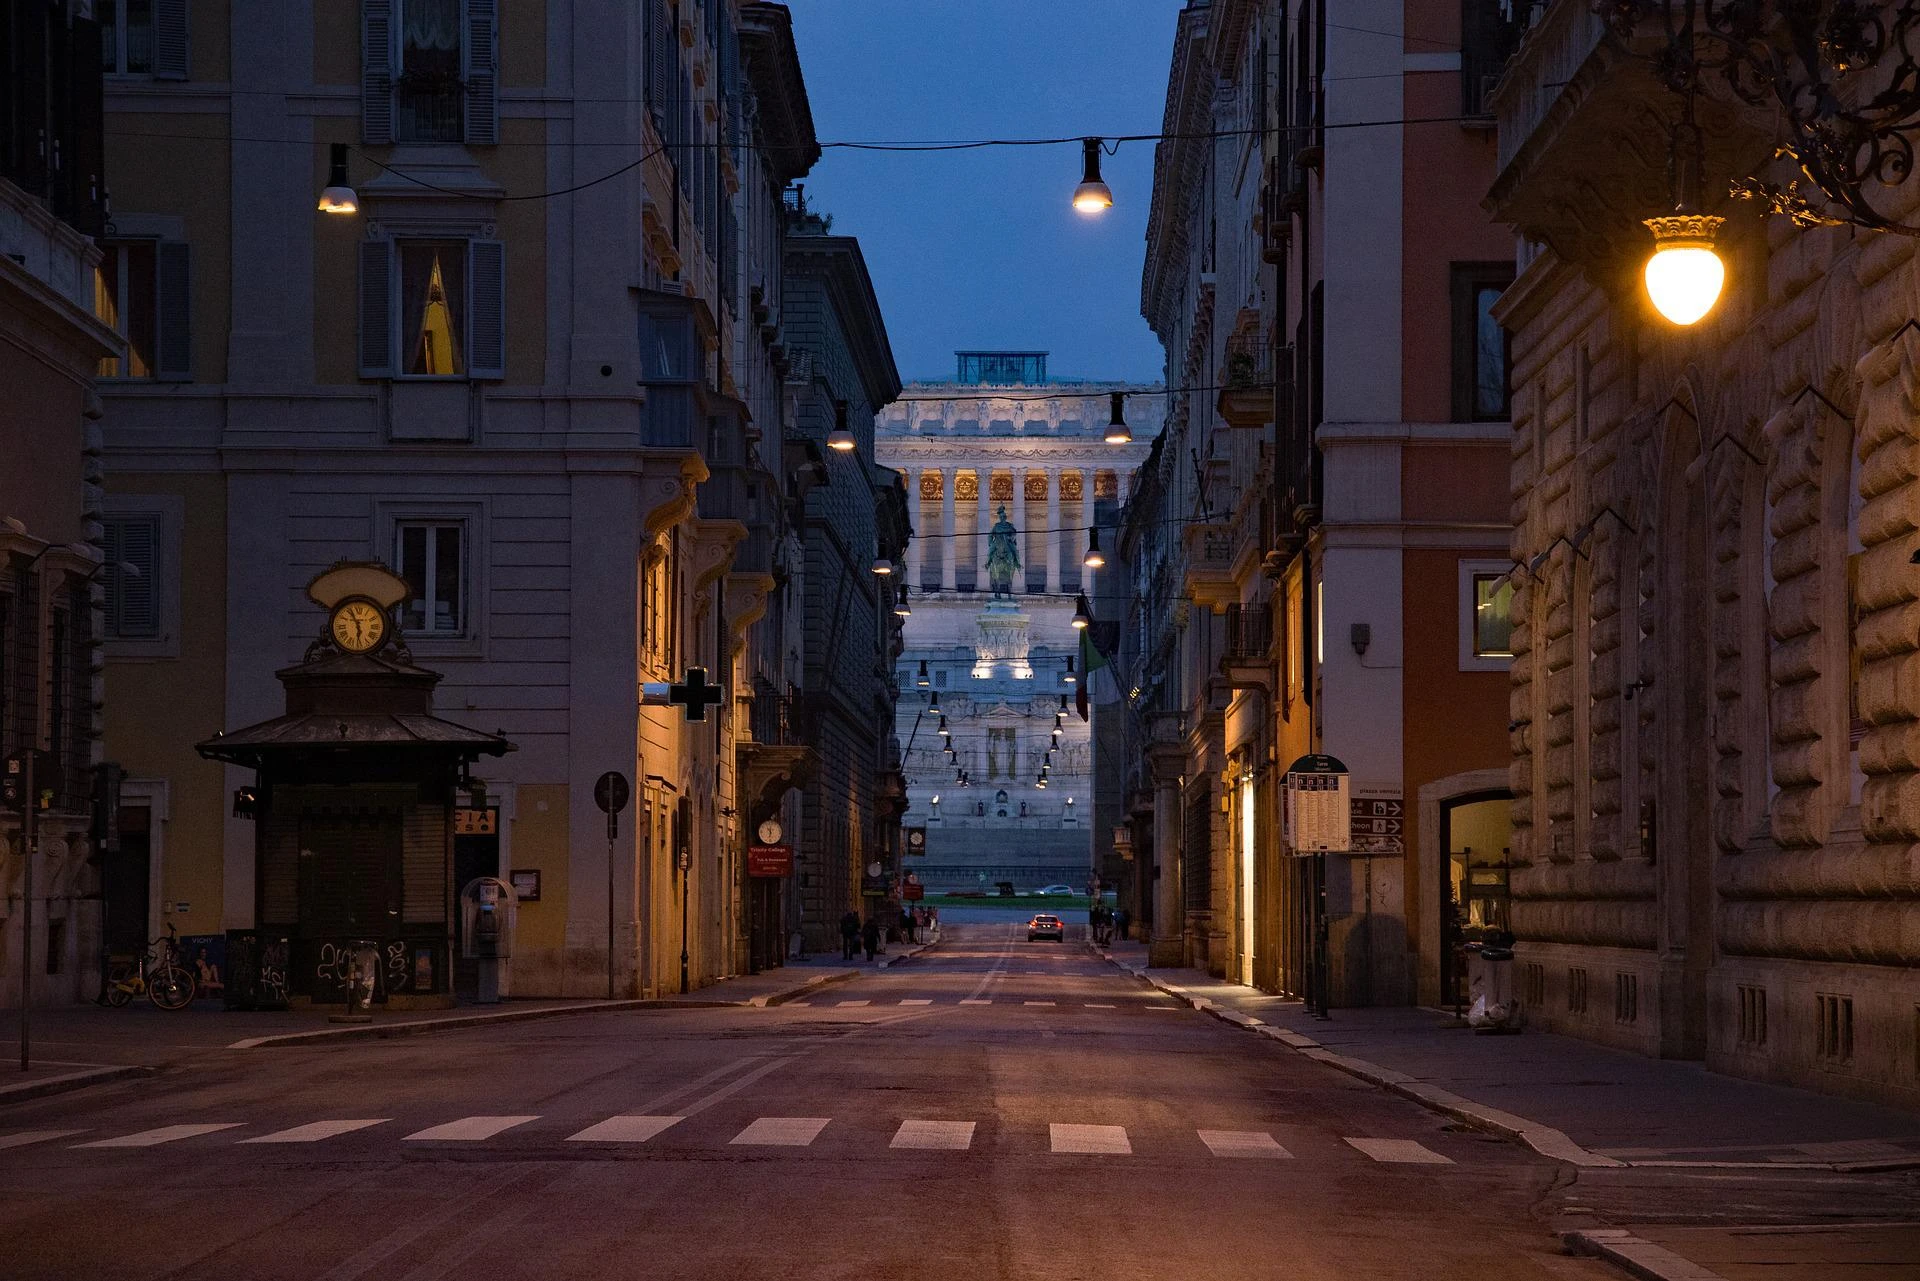 Ушли городок. Улица Корсо в Риме. Италия улица Корсо. Рим via del Corso. Улочки Италии линейная перспектива.